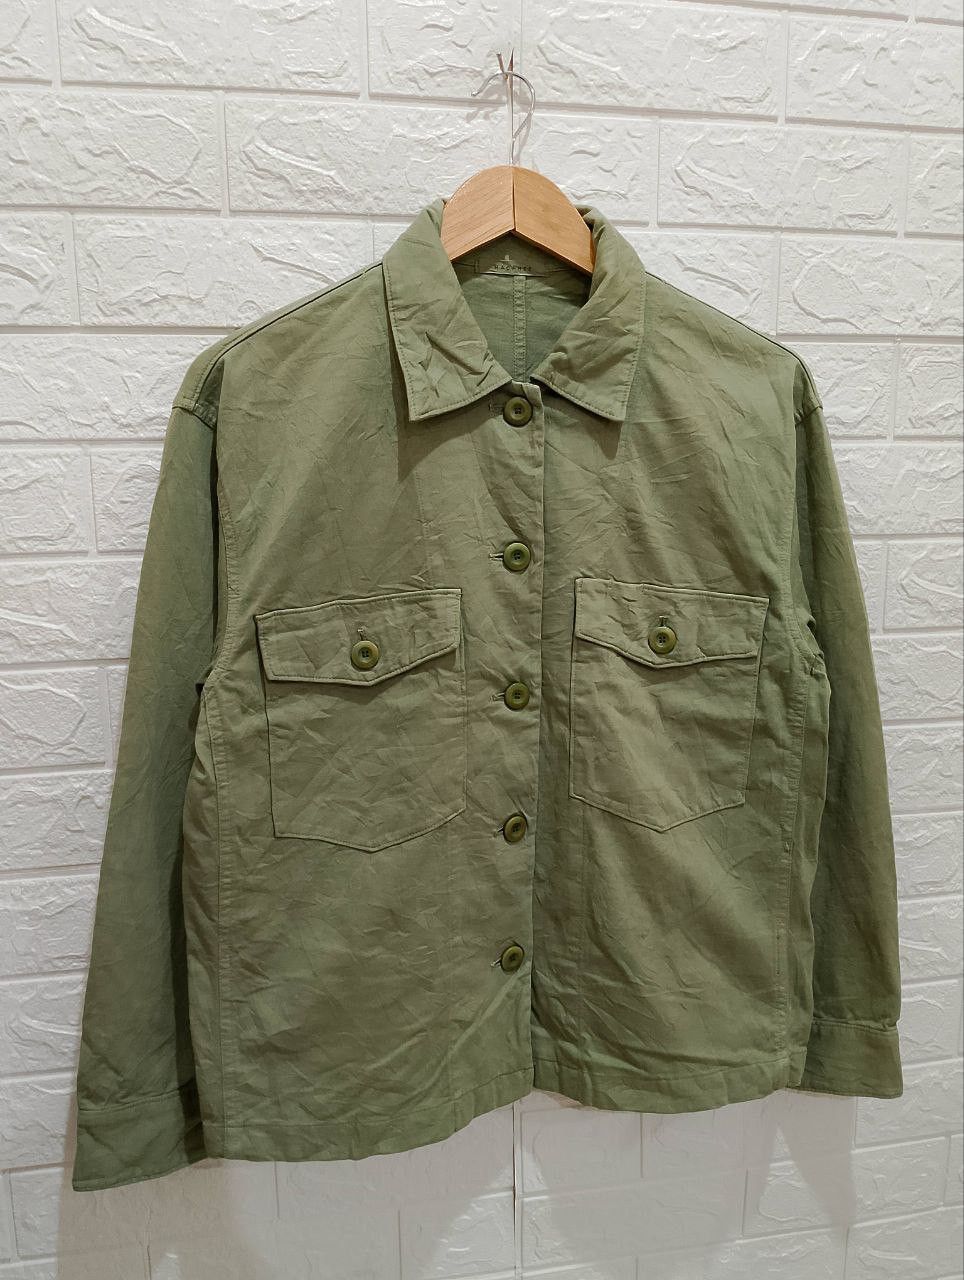 Archival Clothing - Macphee Military OG-107 Design Long Sleeve Shirt Jacket - 4